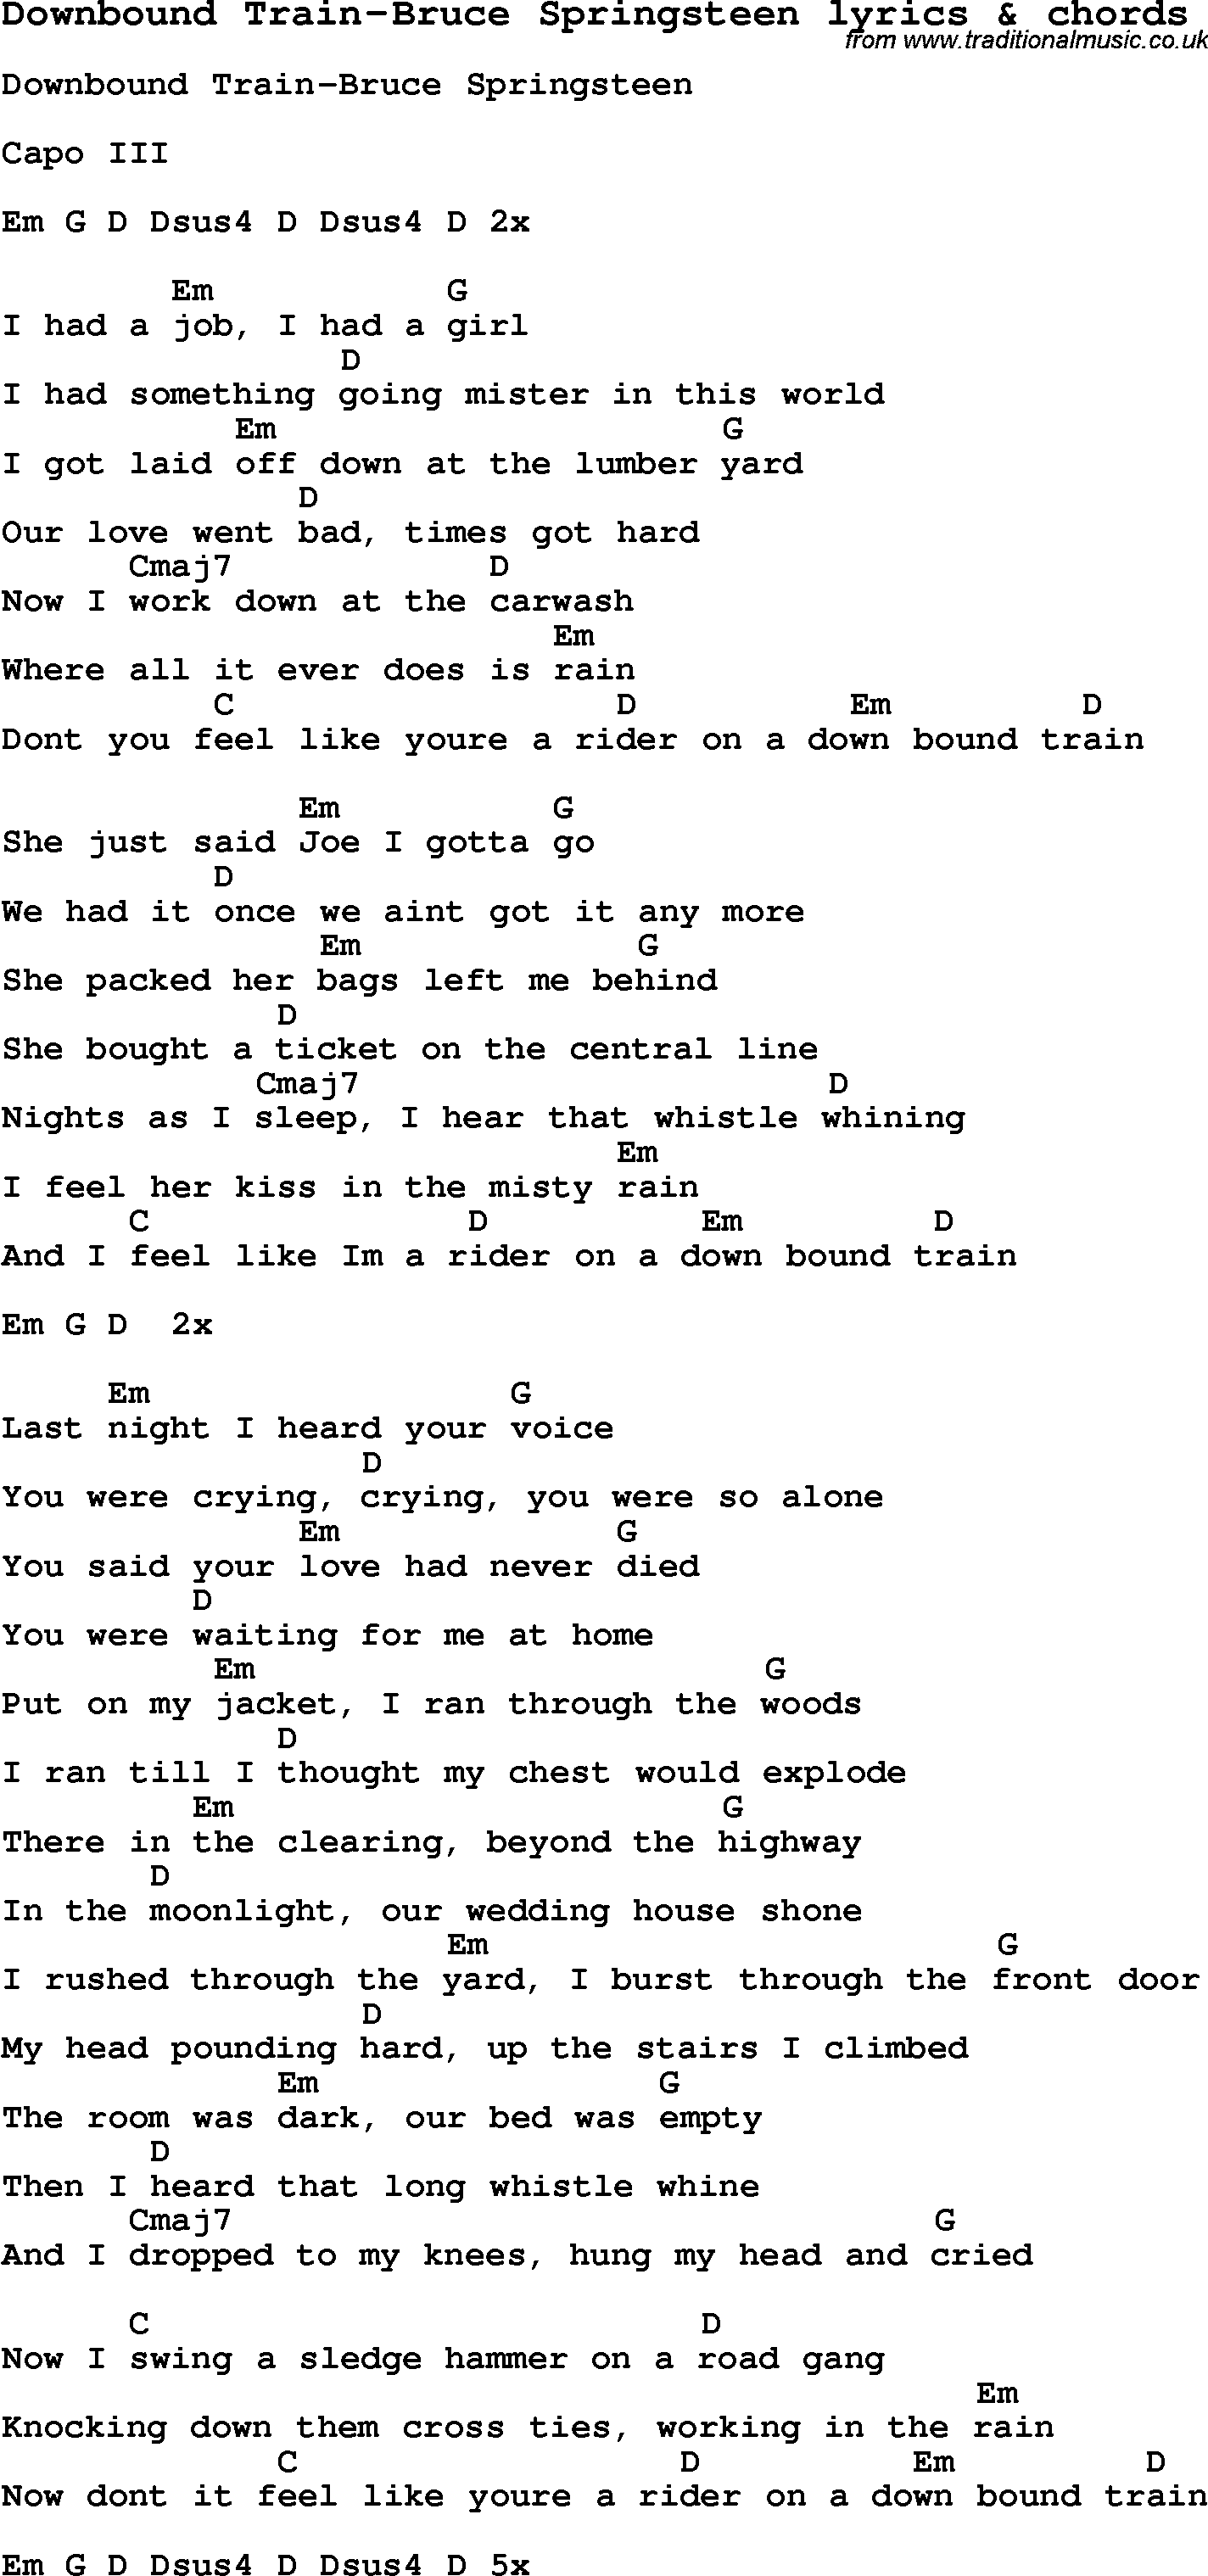 Love Song Lyrics for: Downbound Train-Bruce Springsteen with chords for Ukulele, Guitar Banjo etc.